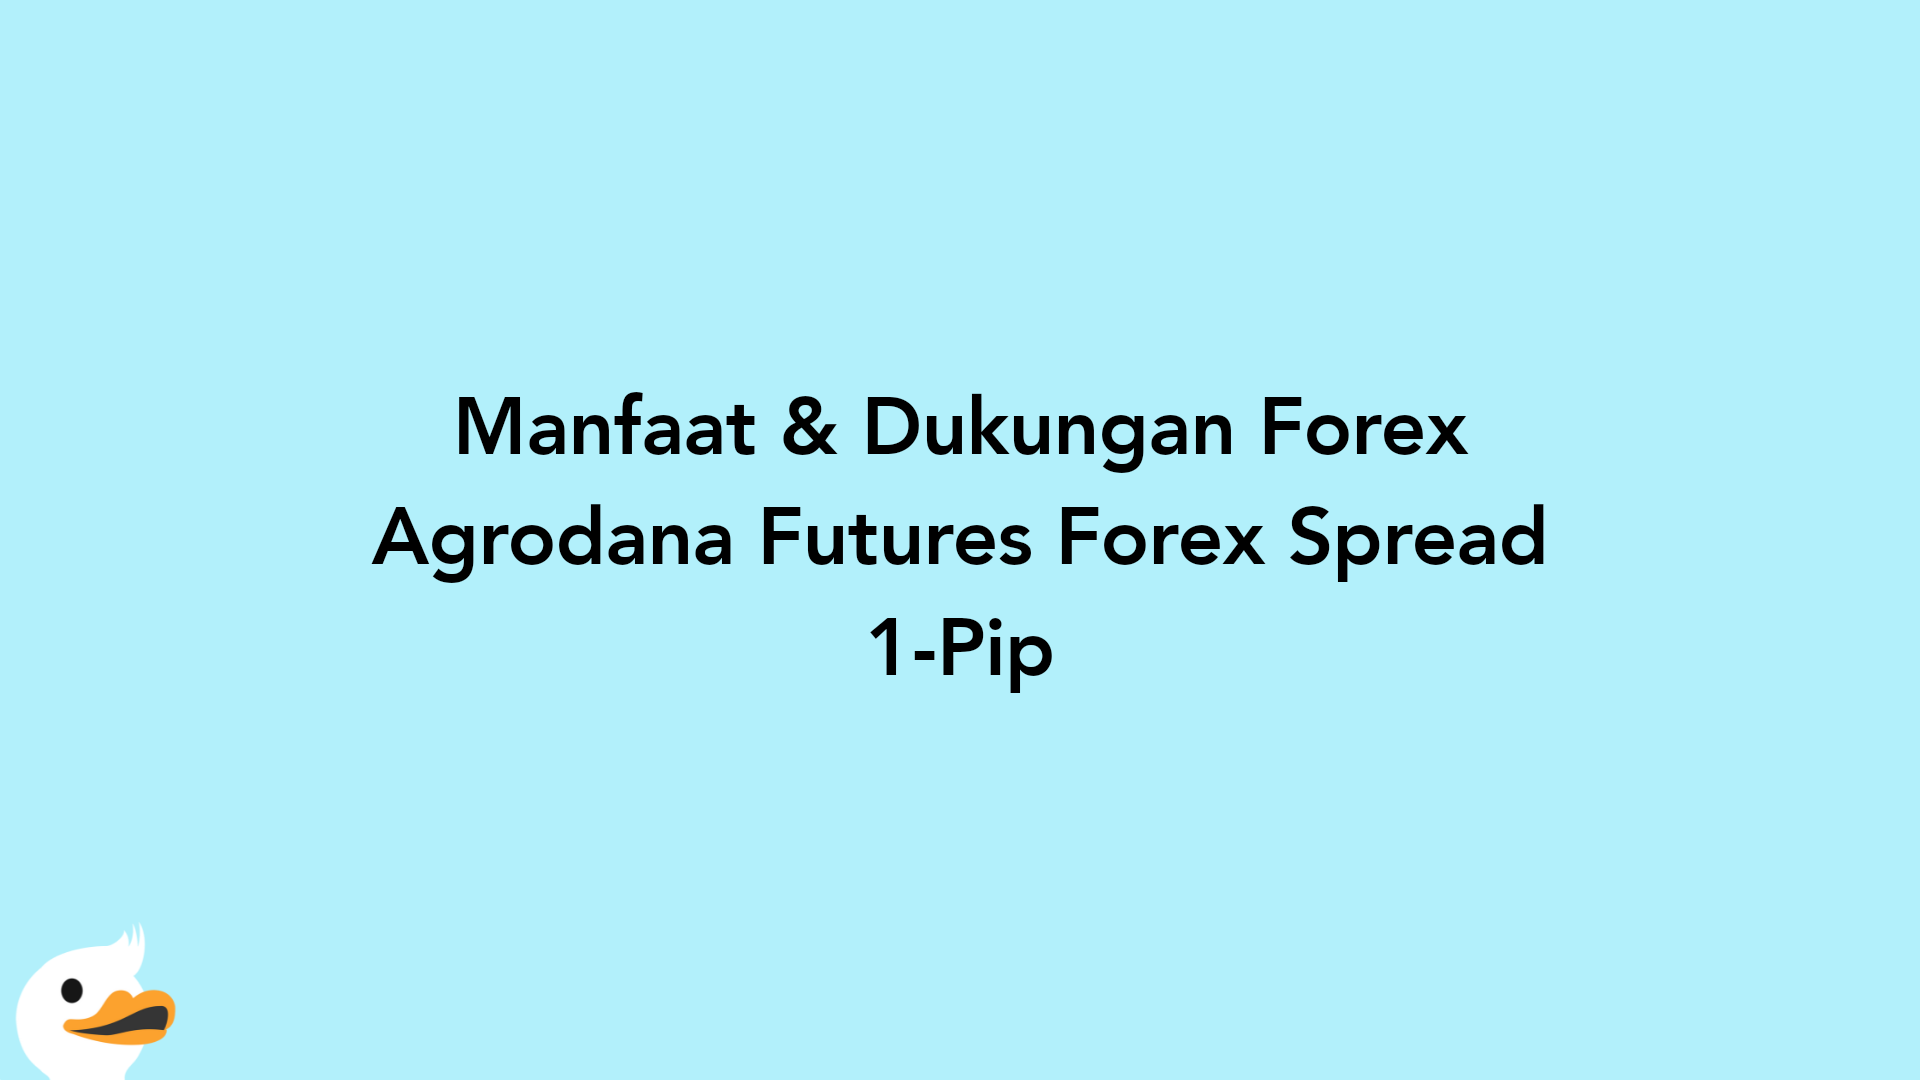 Manfaat & Dukungan Forex Agrodana Futures Forex Spread 1-Pip